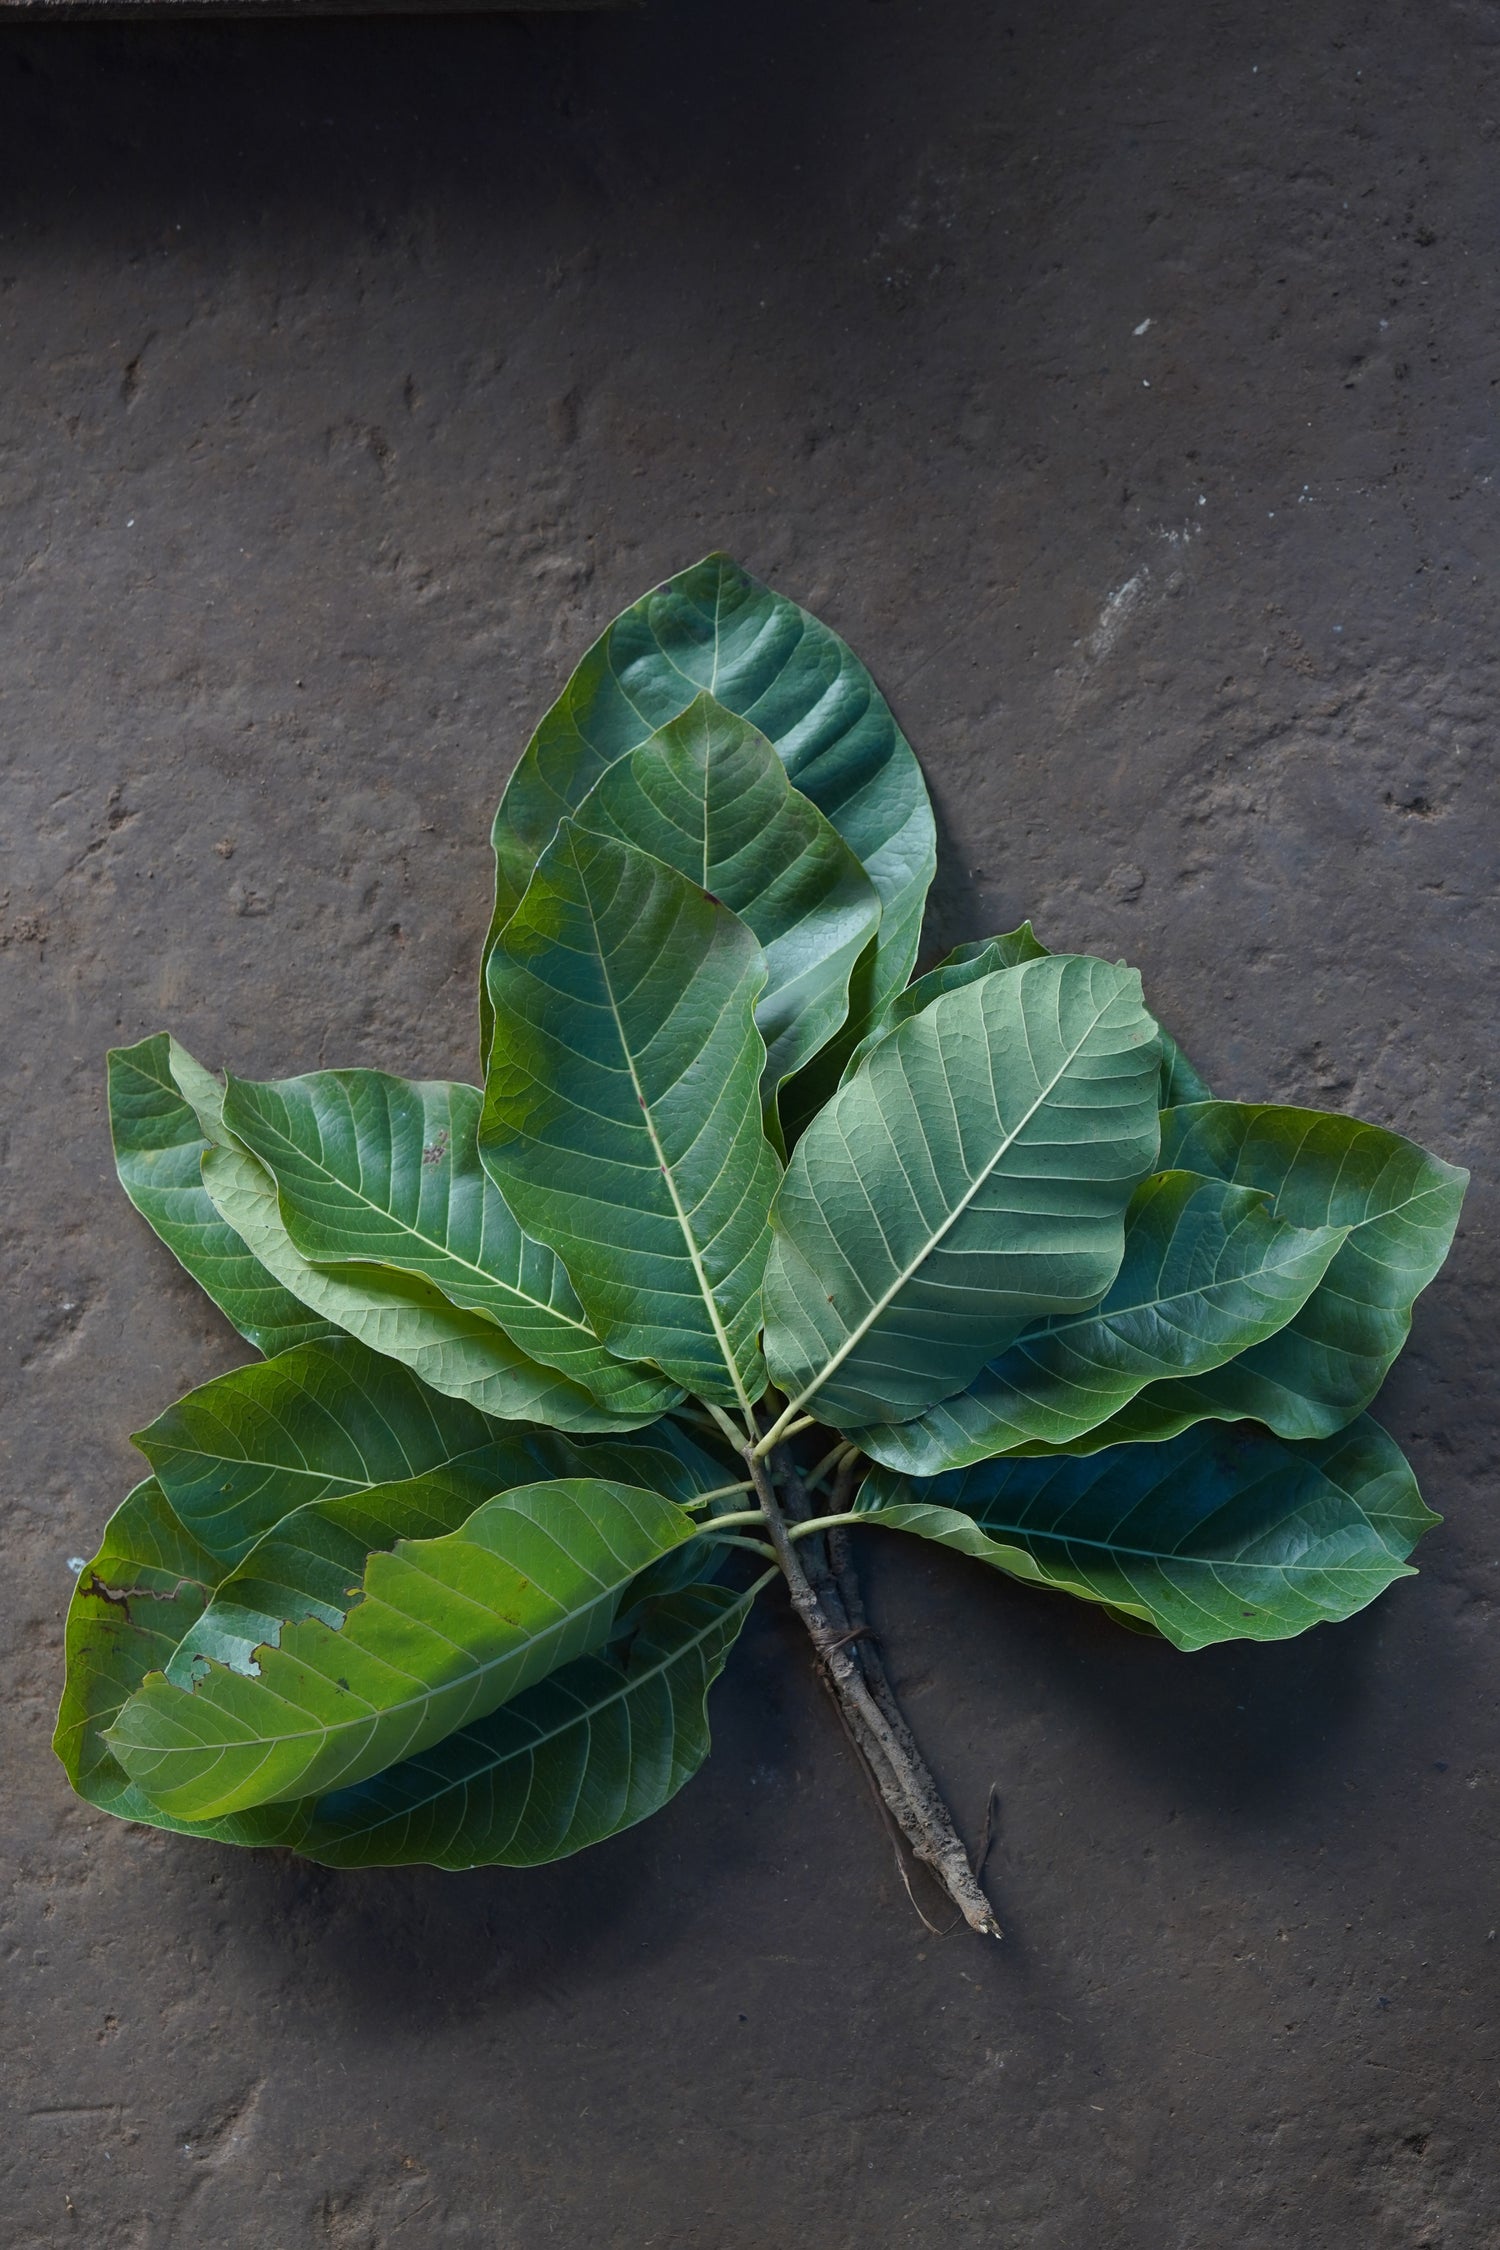 Moh / Mohati / मोह / मोहाटी / Mahua / Madhuca longifolia